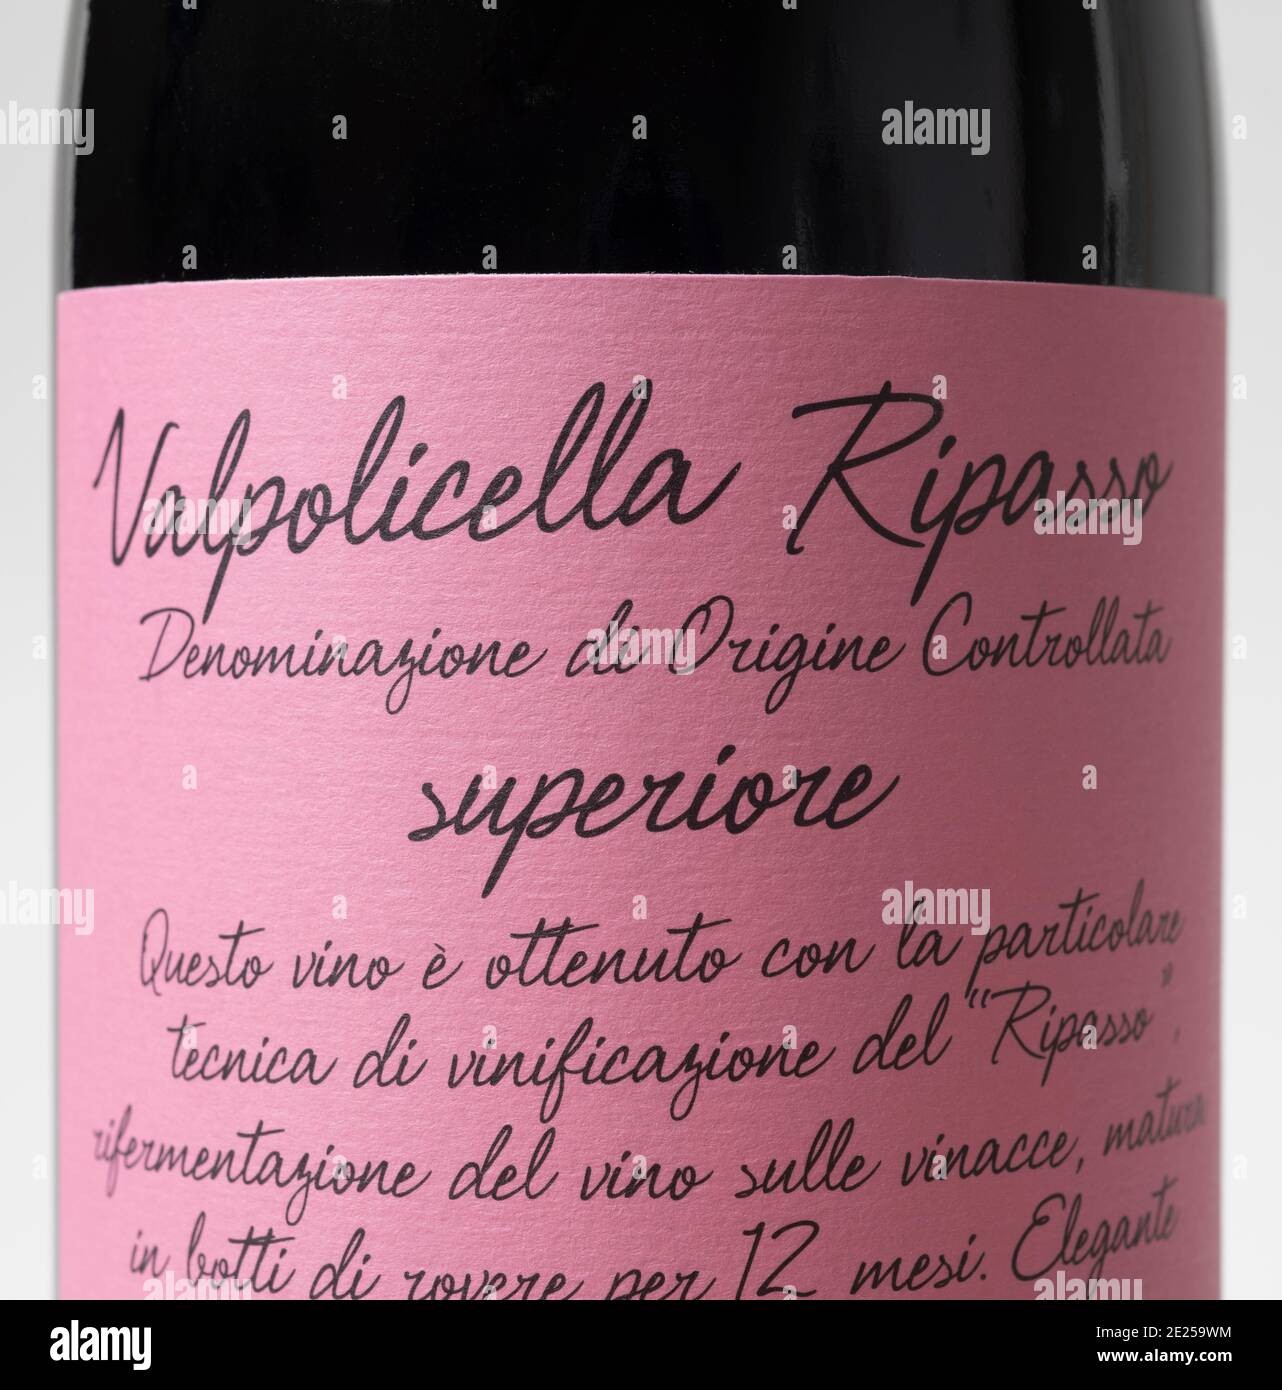 Valpolicella Ripasso 2018 Villa Borghetti étiquette de bouteille de vin rouge italien Banque D'Images